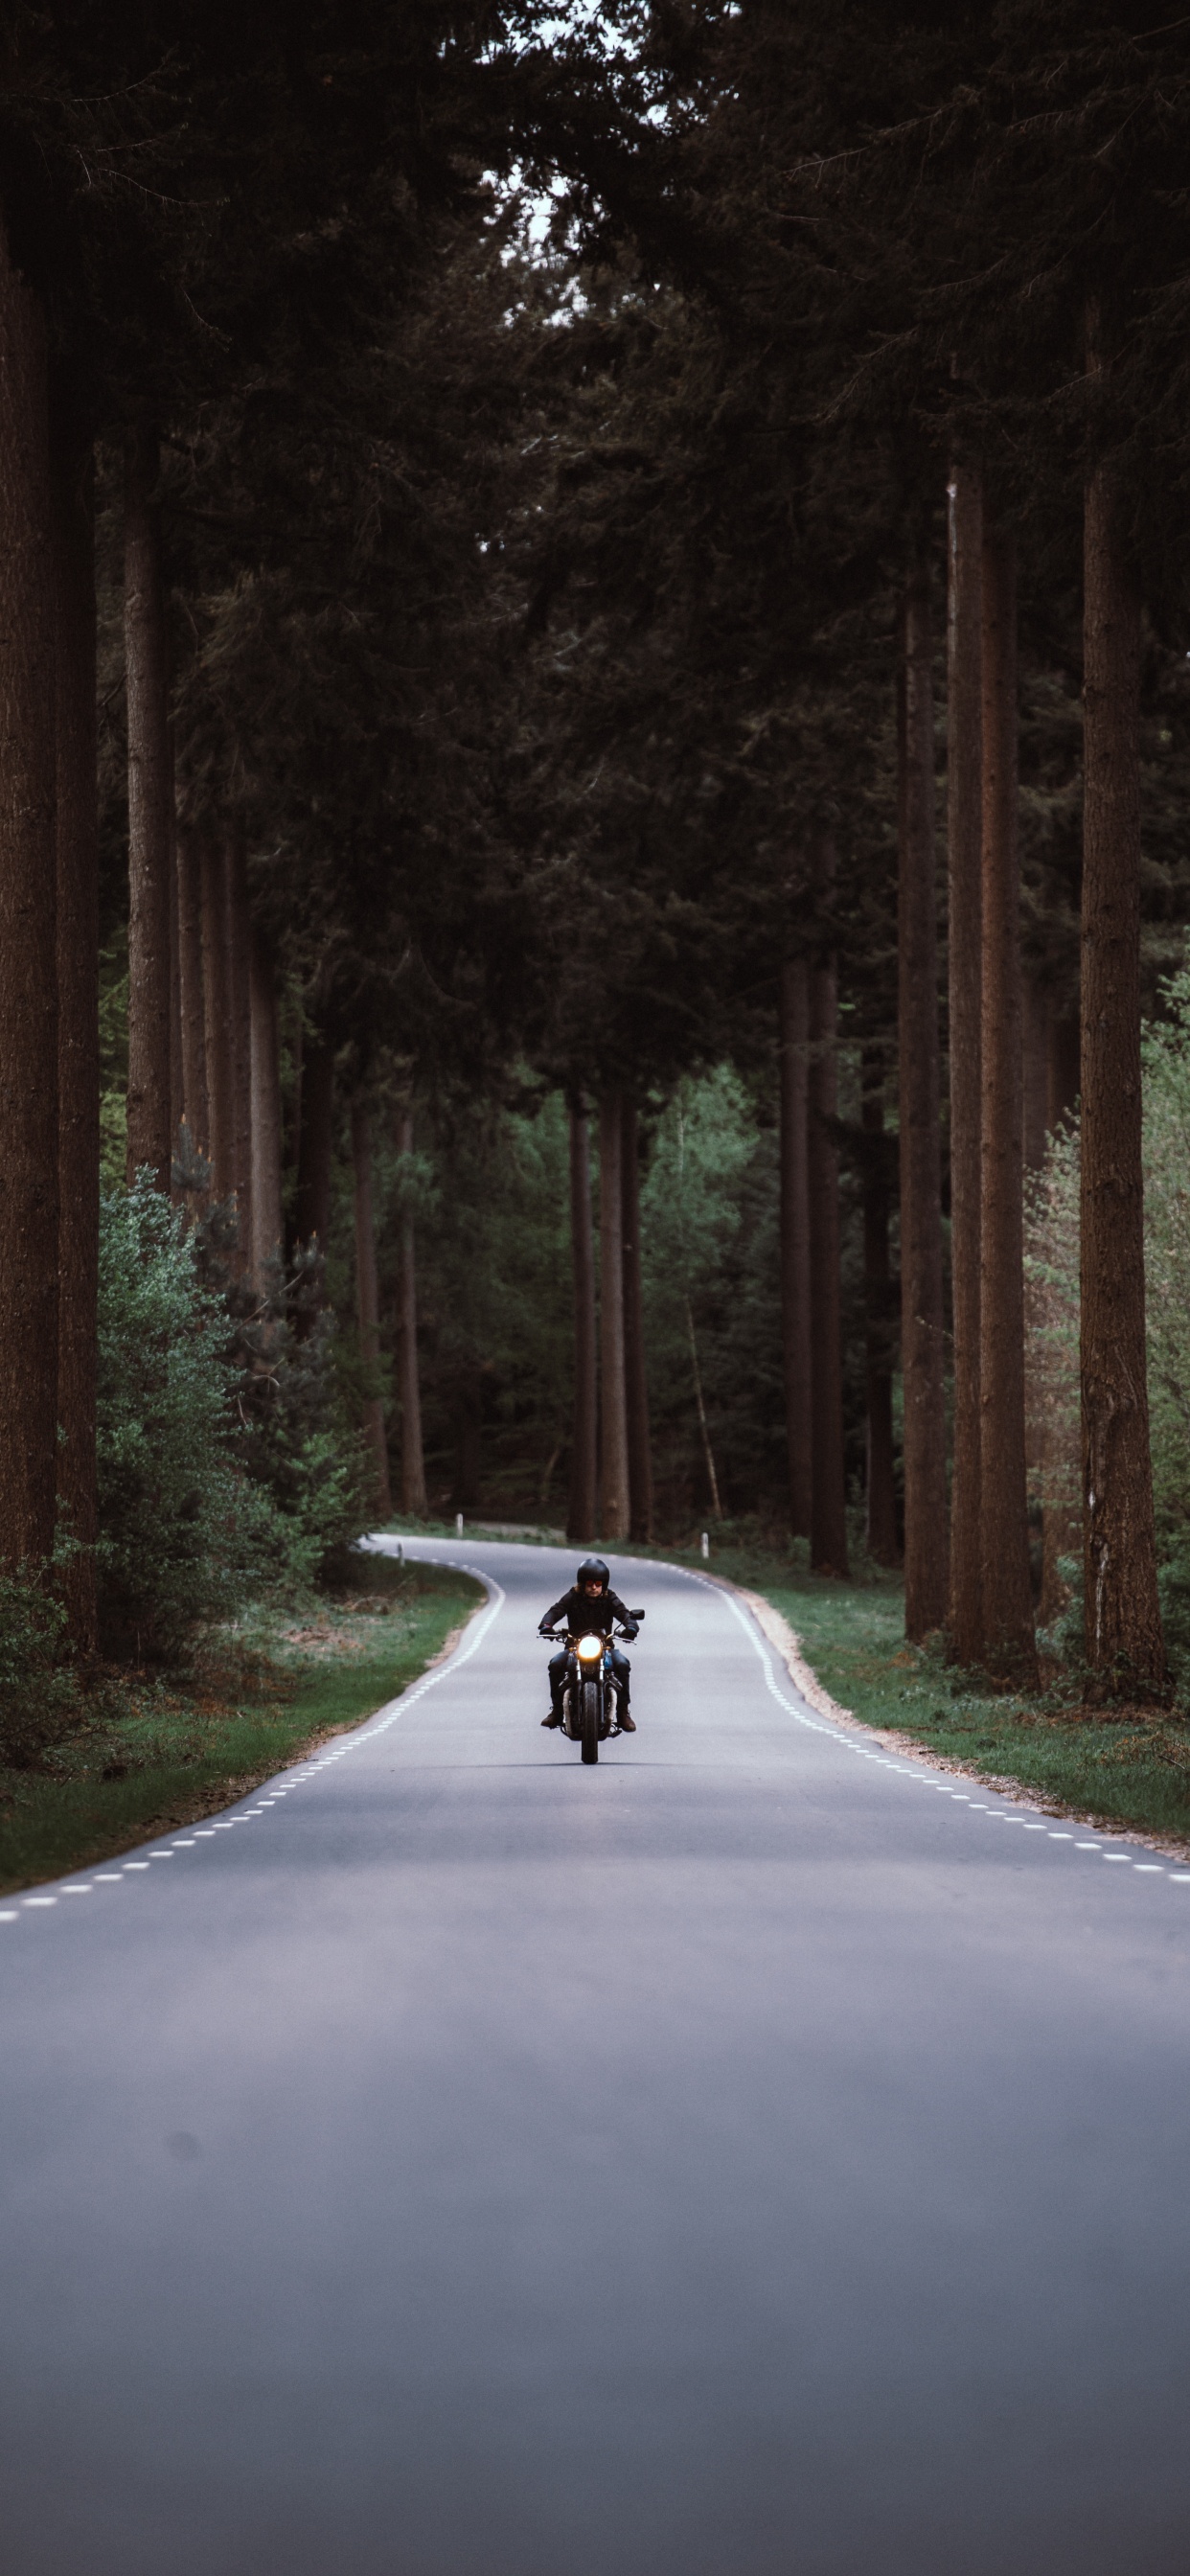 Persona en Motocicleta en la Carretera Entre Árboles Durante el Día. Wallpaper in 1242x2688 Resolution